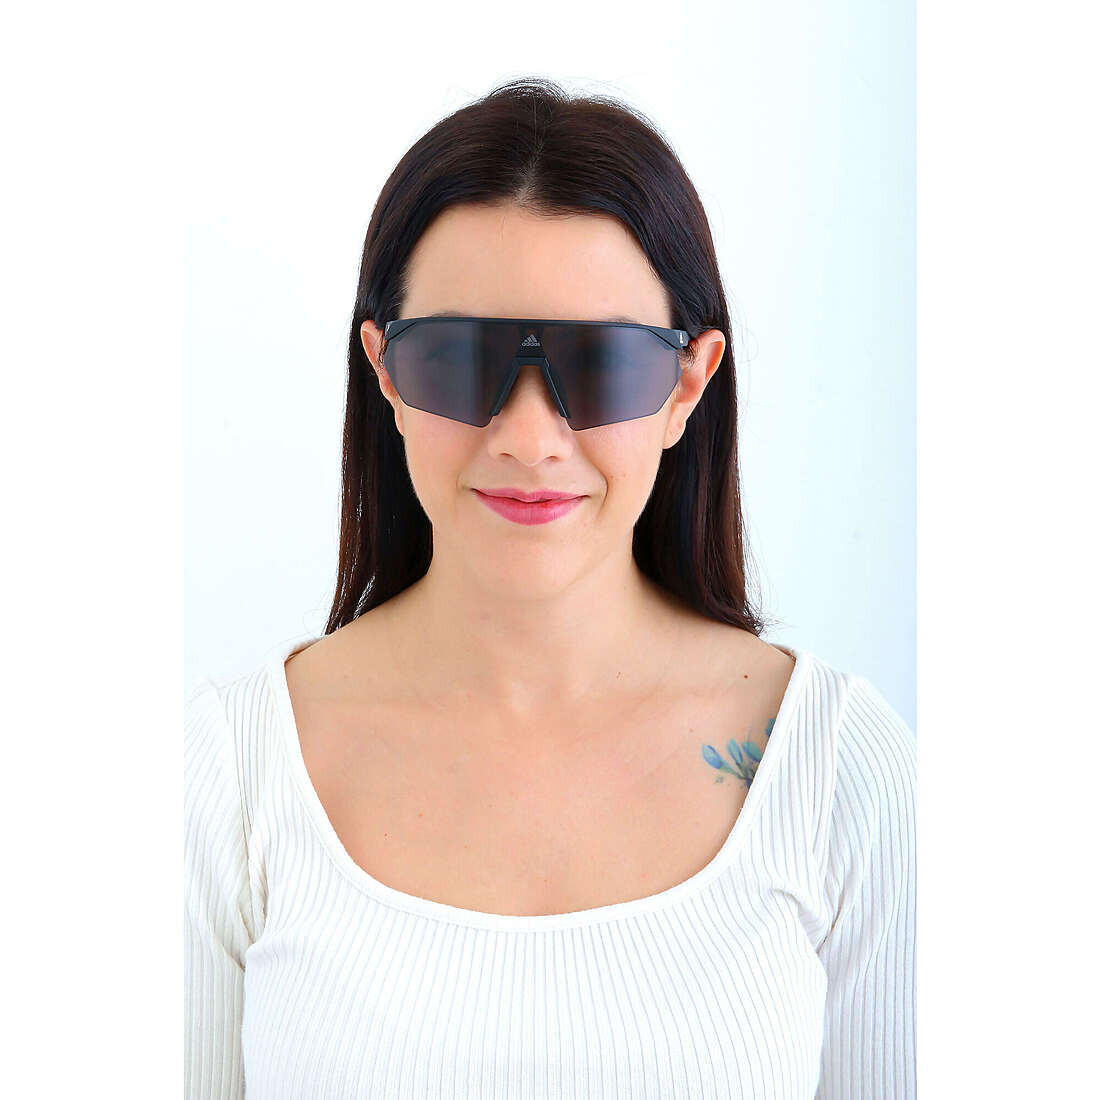 adidas Originals occhiali da sole donna SP00760002A indosso